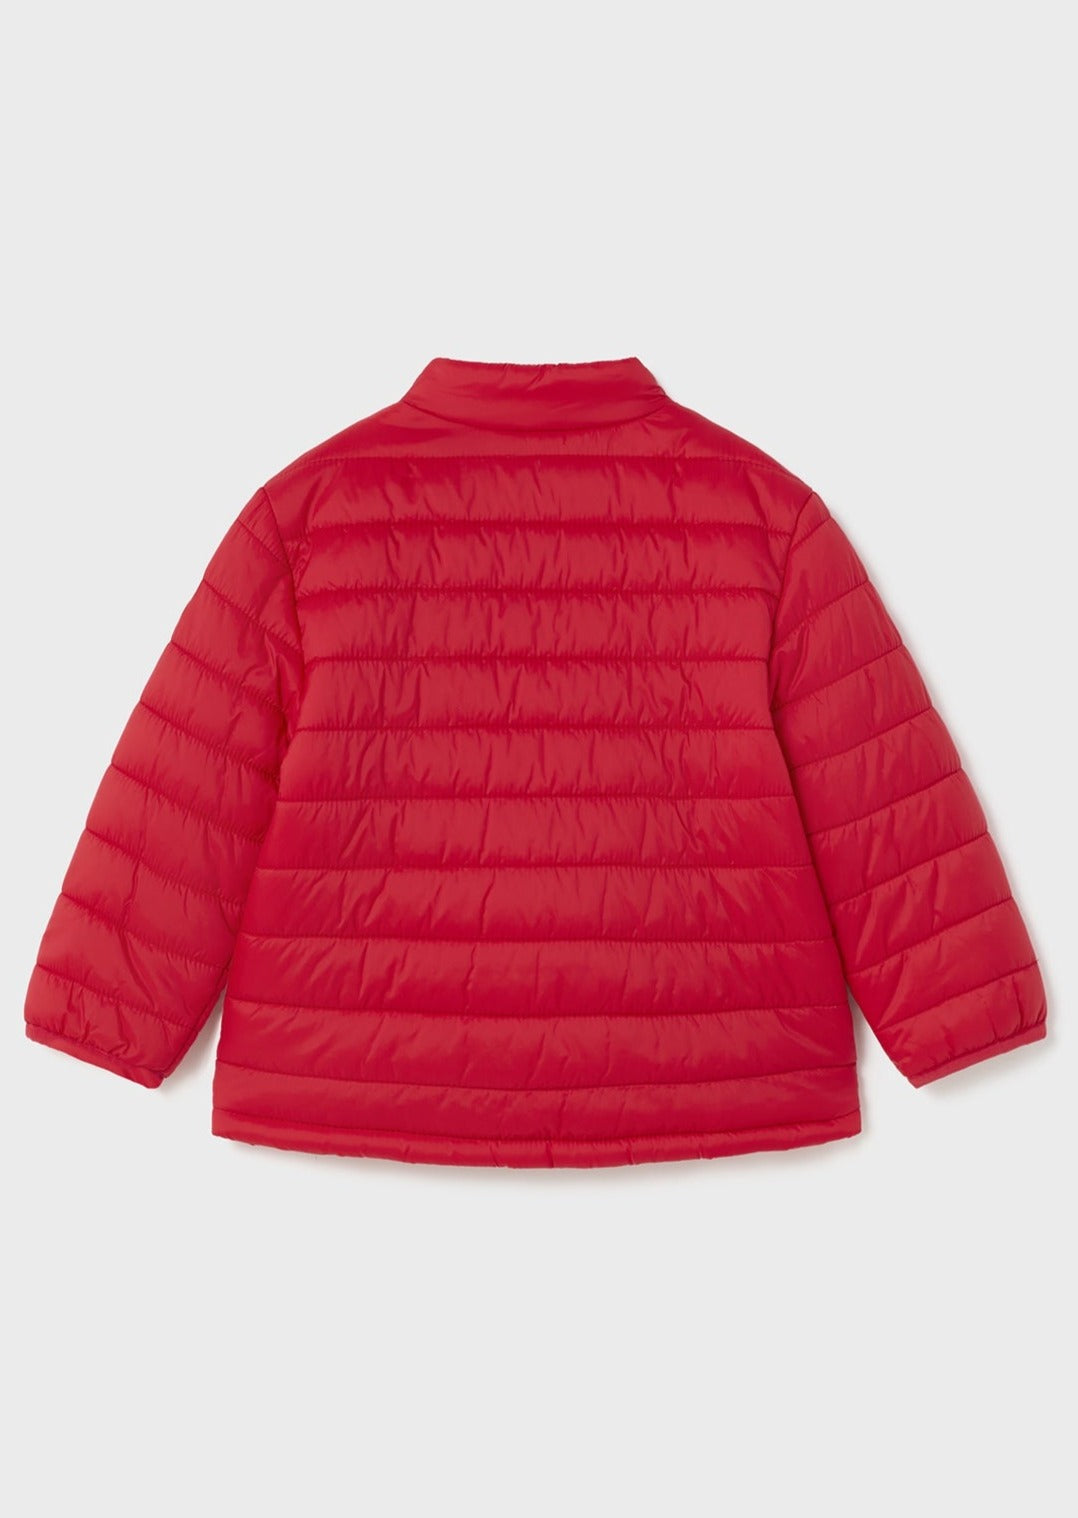 Mayoral 1425-50 Lekka kurtka przejściowa chłopiec kolor czerwony